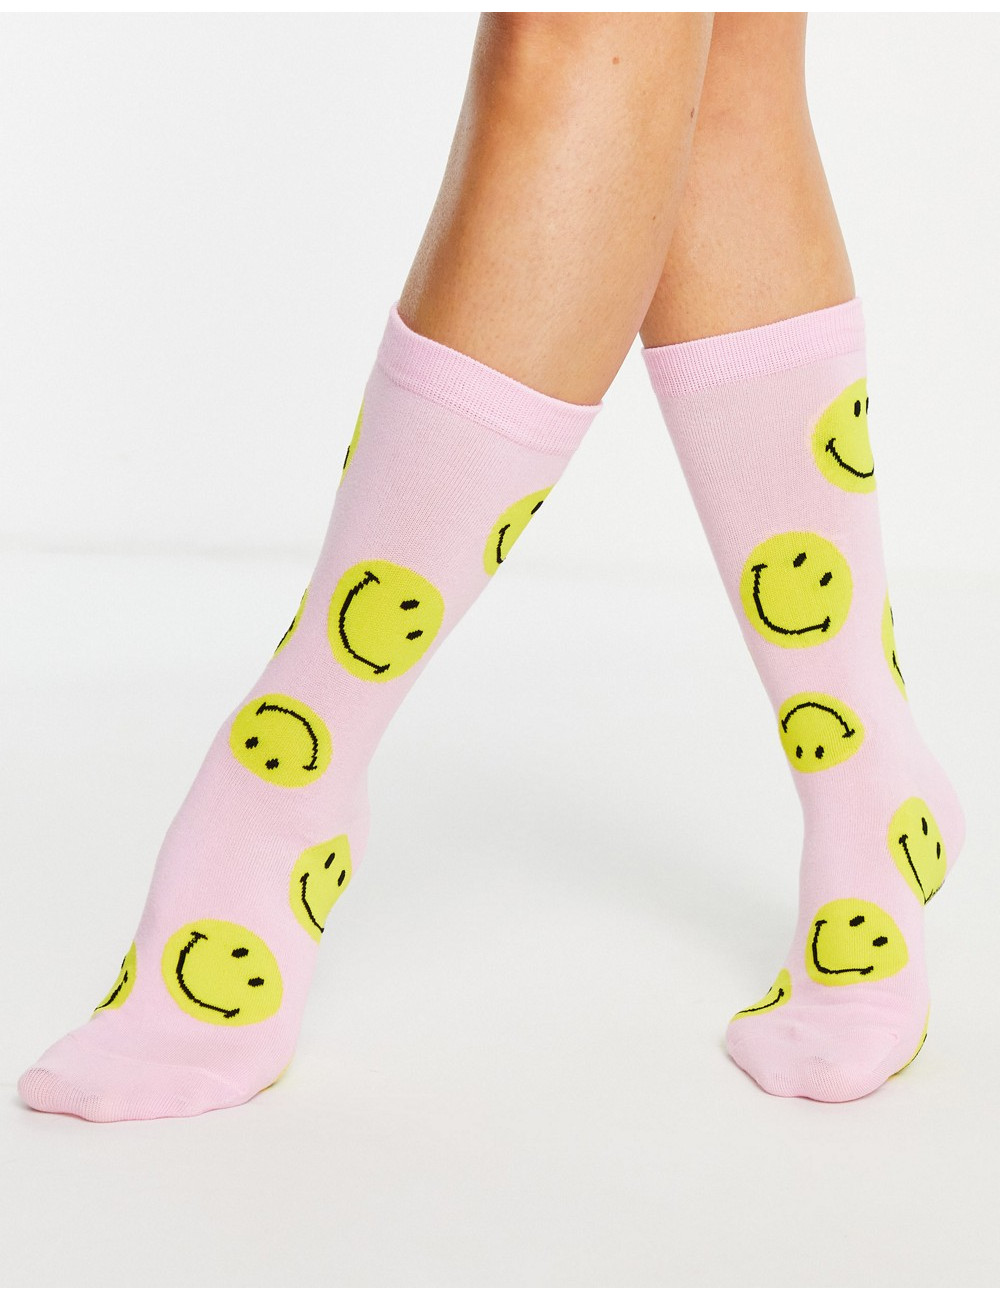 Typo x Smiley face socks in...